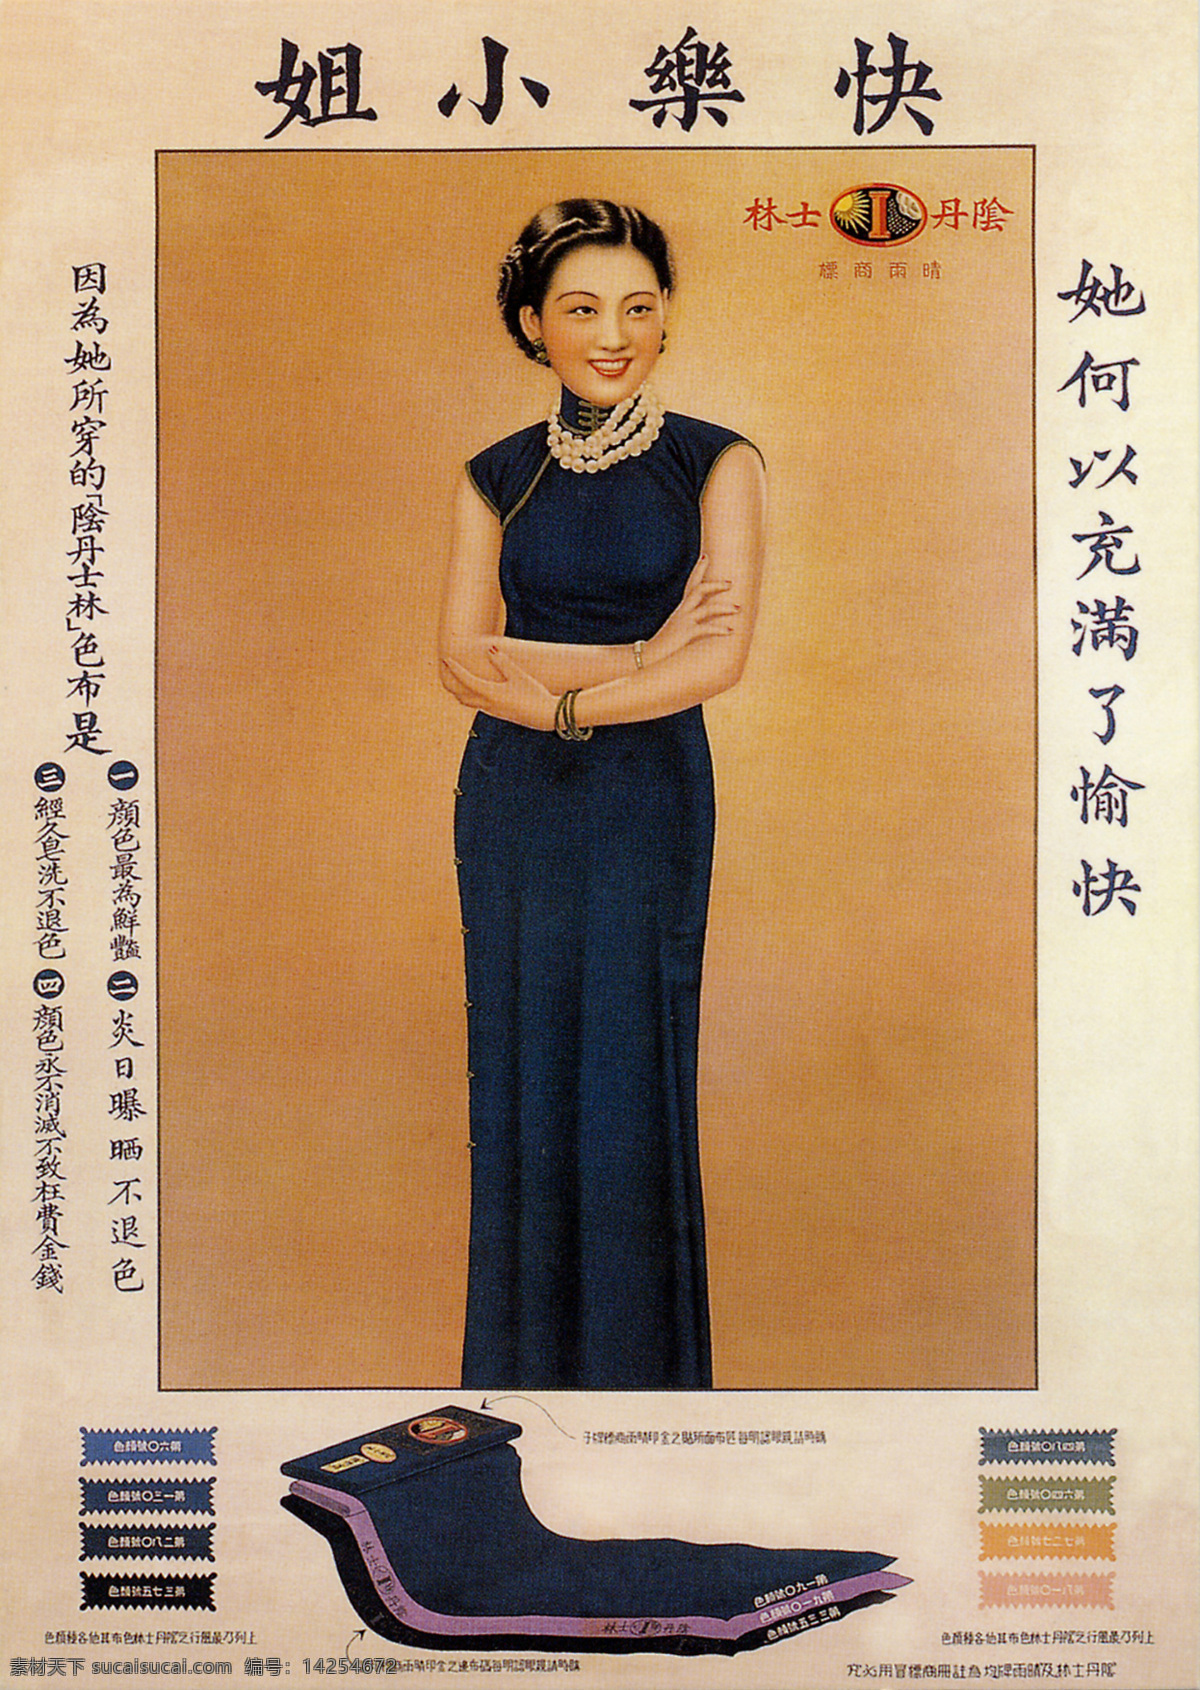 民国 老 上海 广告 年画 月份 牌 老上海 招贴 海报 月份牌 旧上海 阴丹士林 传统文化 文化艺术